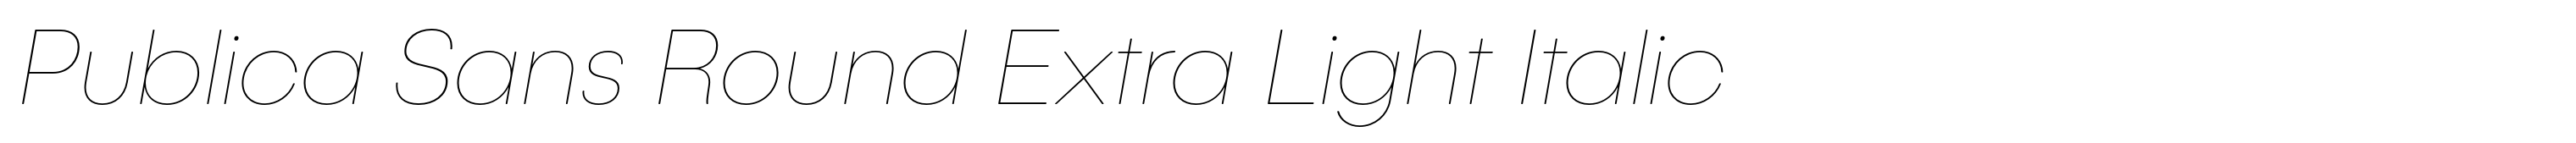 Publica Sans Round Extra Light Italic